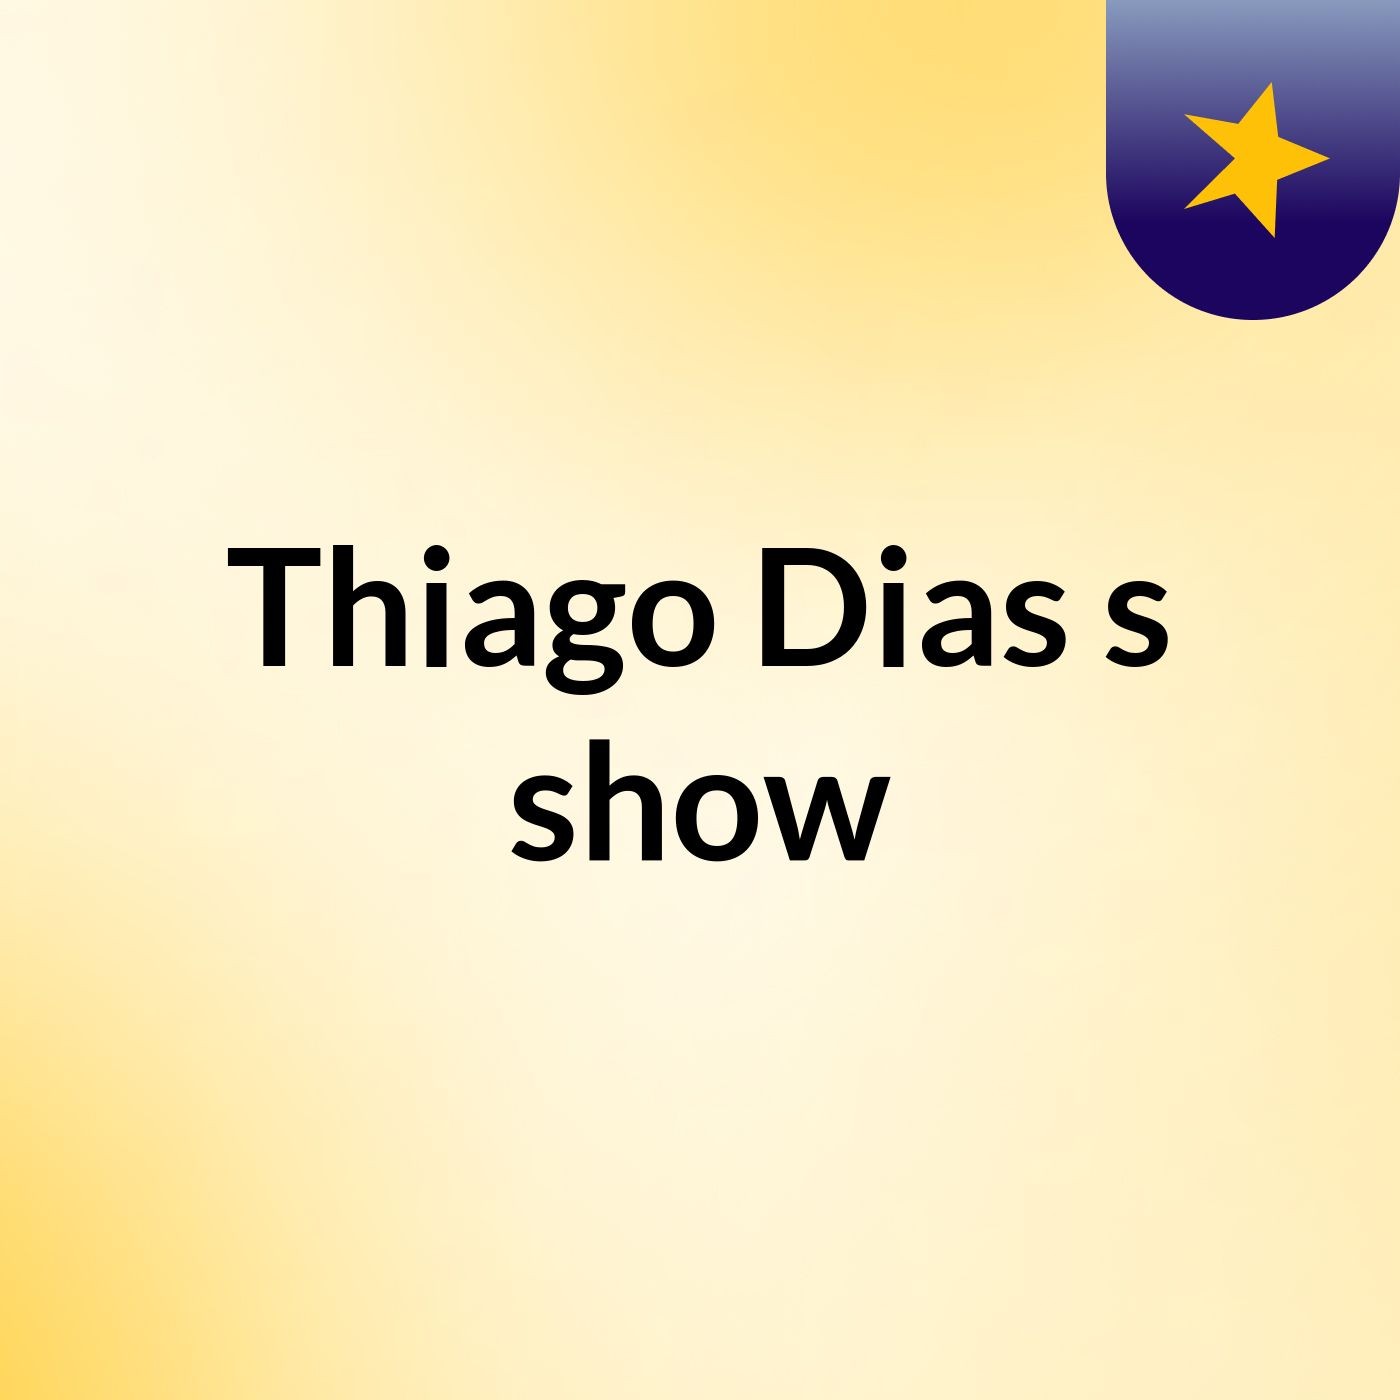 Thiago Dias's show